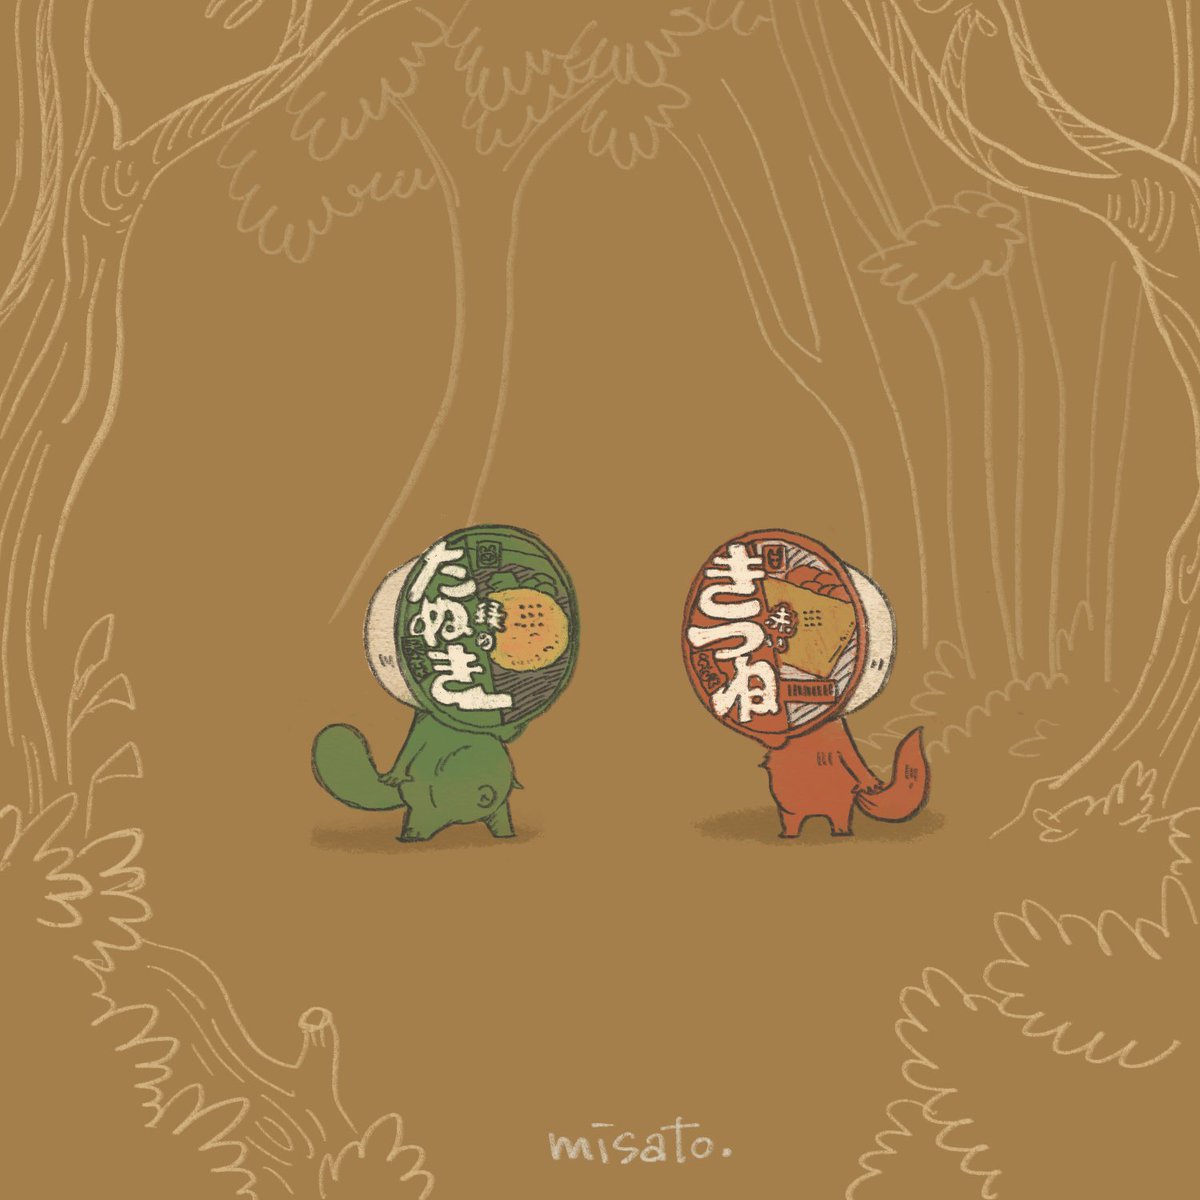 「どこかの森の仮装大会 」|misato.のイラスト